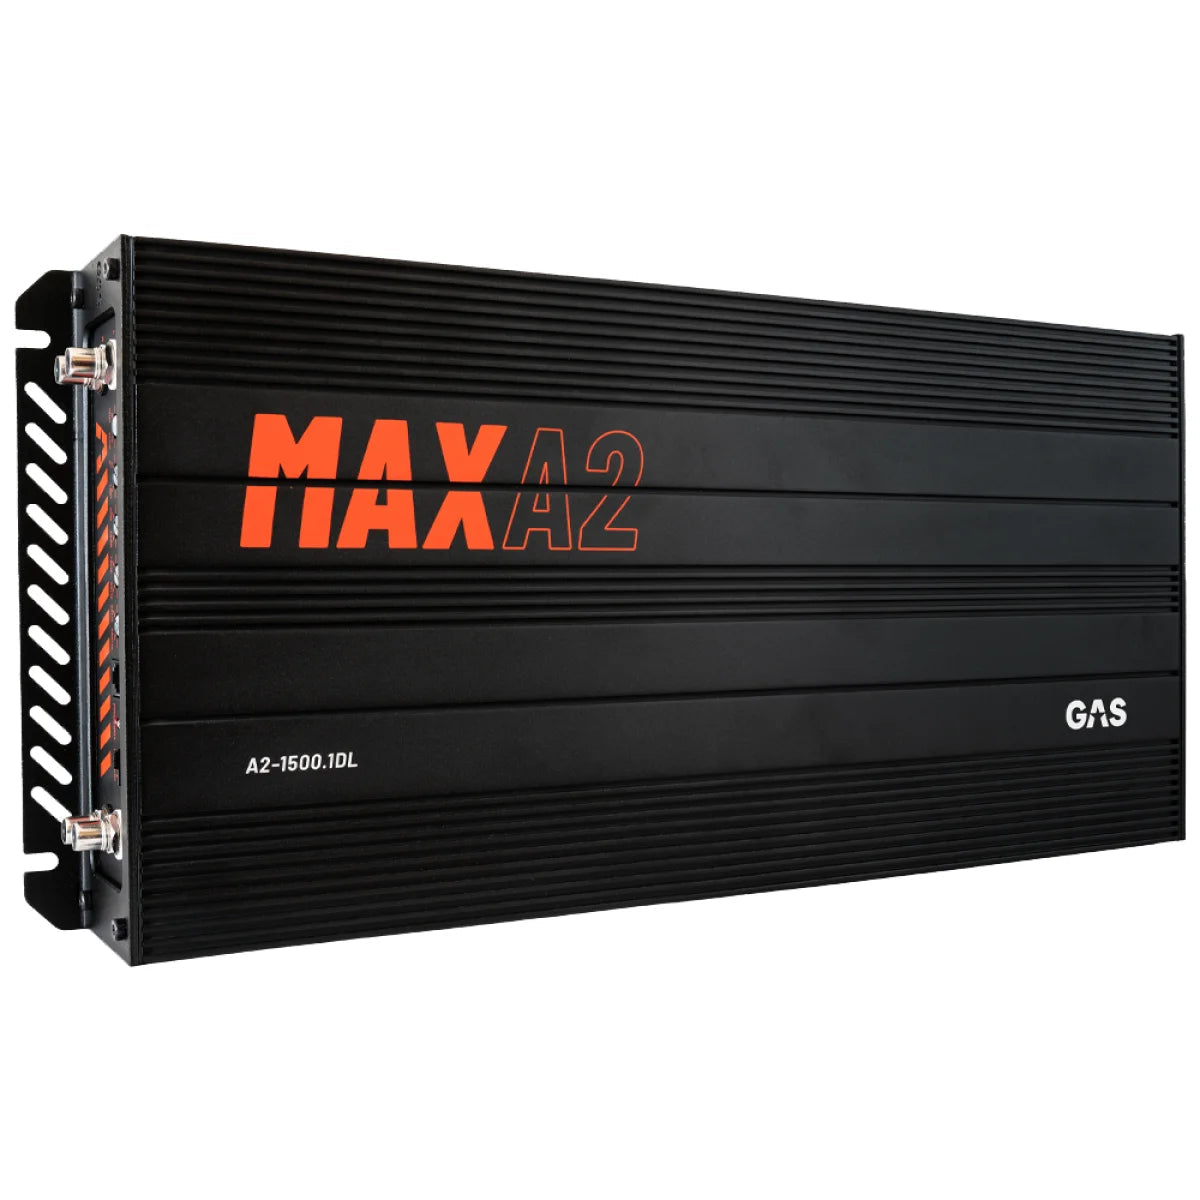 GAS-Max A2 15001DL-1-Kanal Verstärker-Masori.de